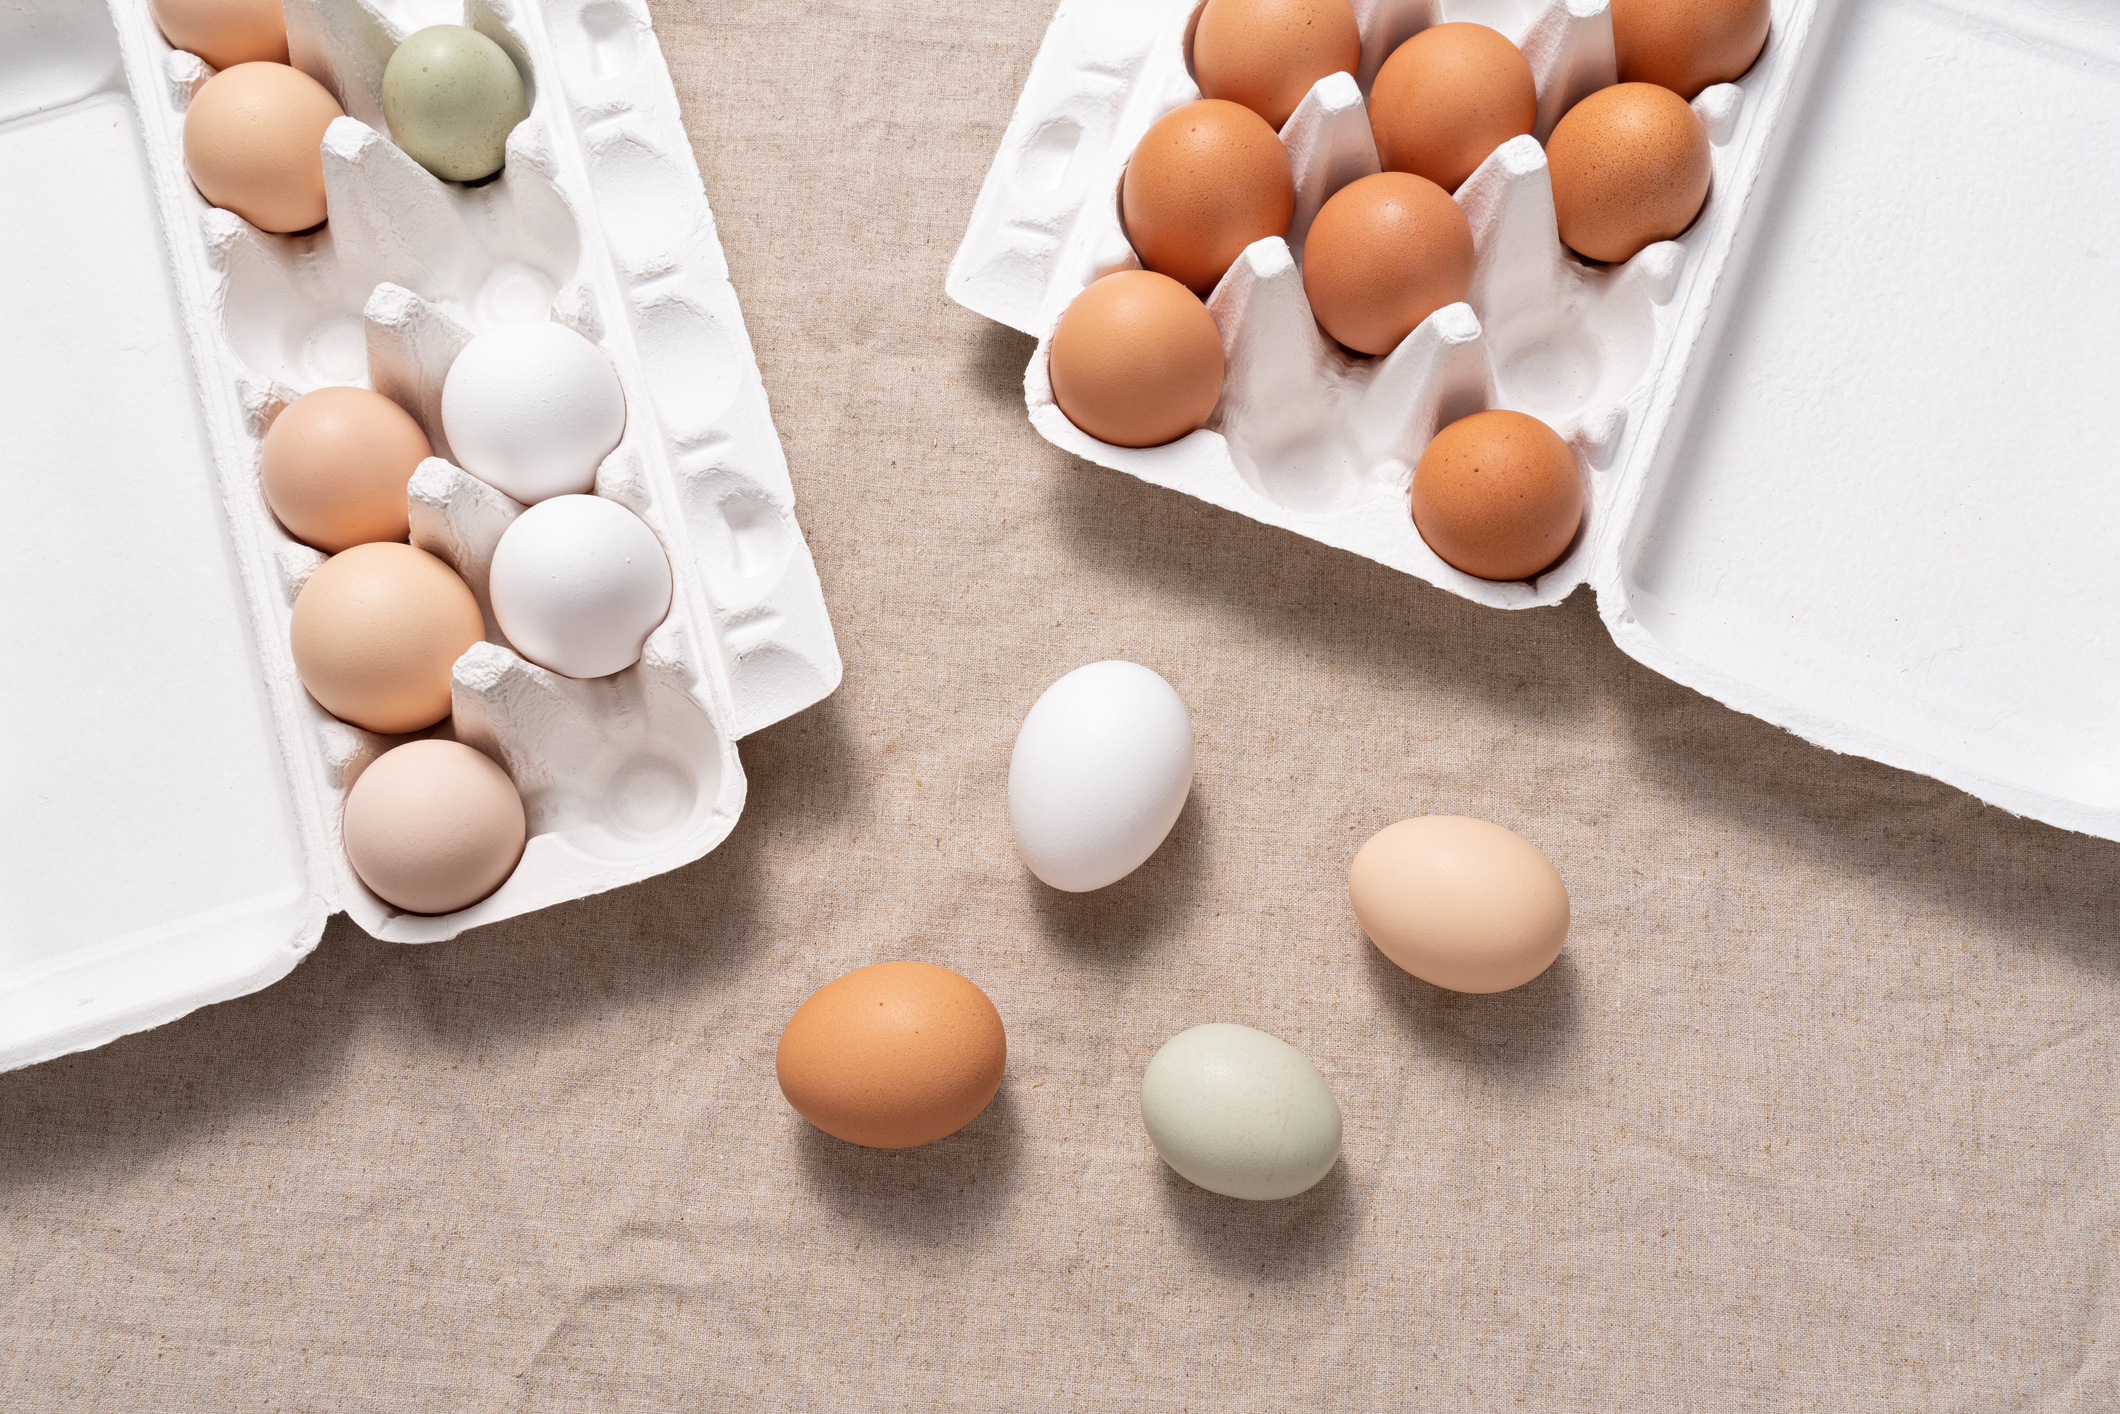 Фото №1 - Как нельзя варить яйца, если не хотите проблем с желудком